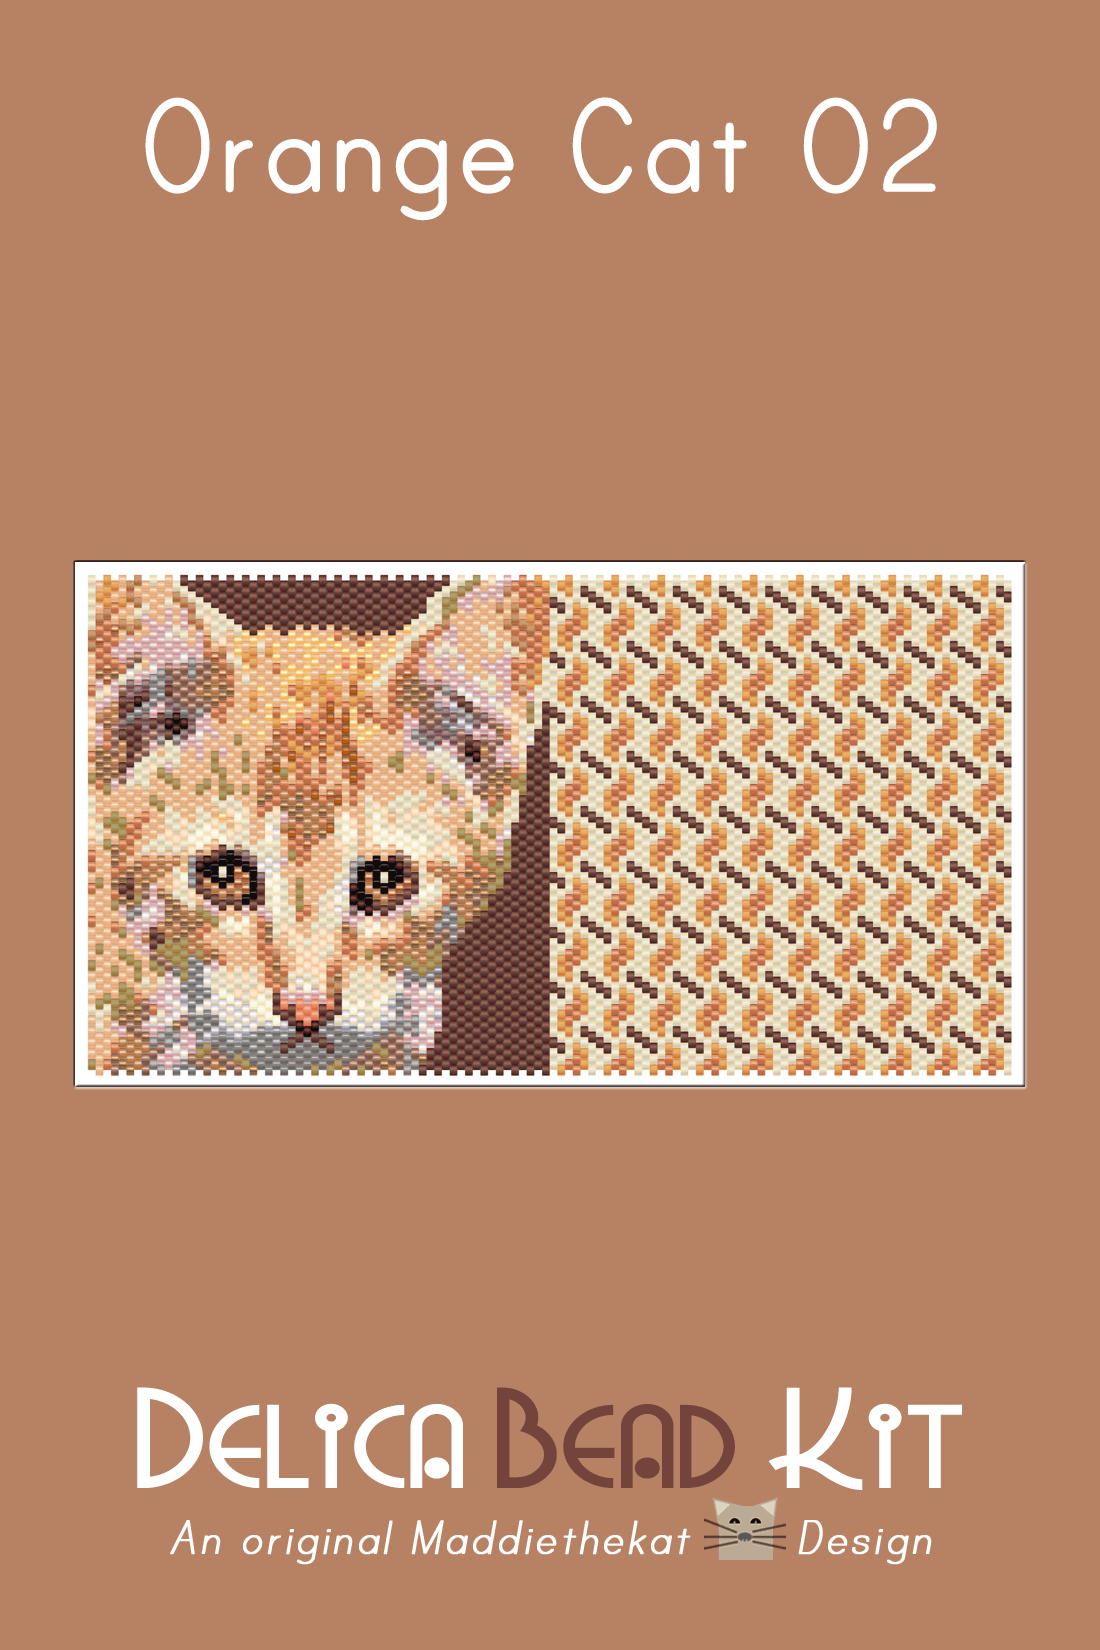 Orange Cat 02 With Back Peyote Bead Pattern PDF or Bead Kit